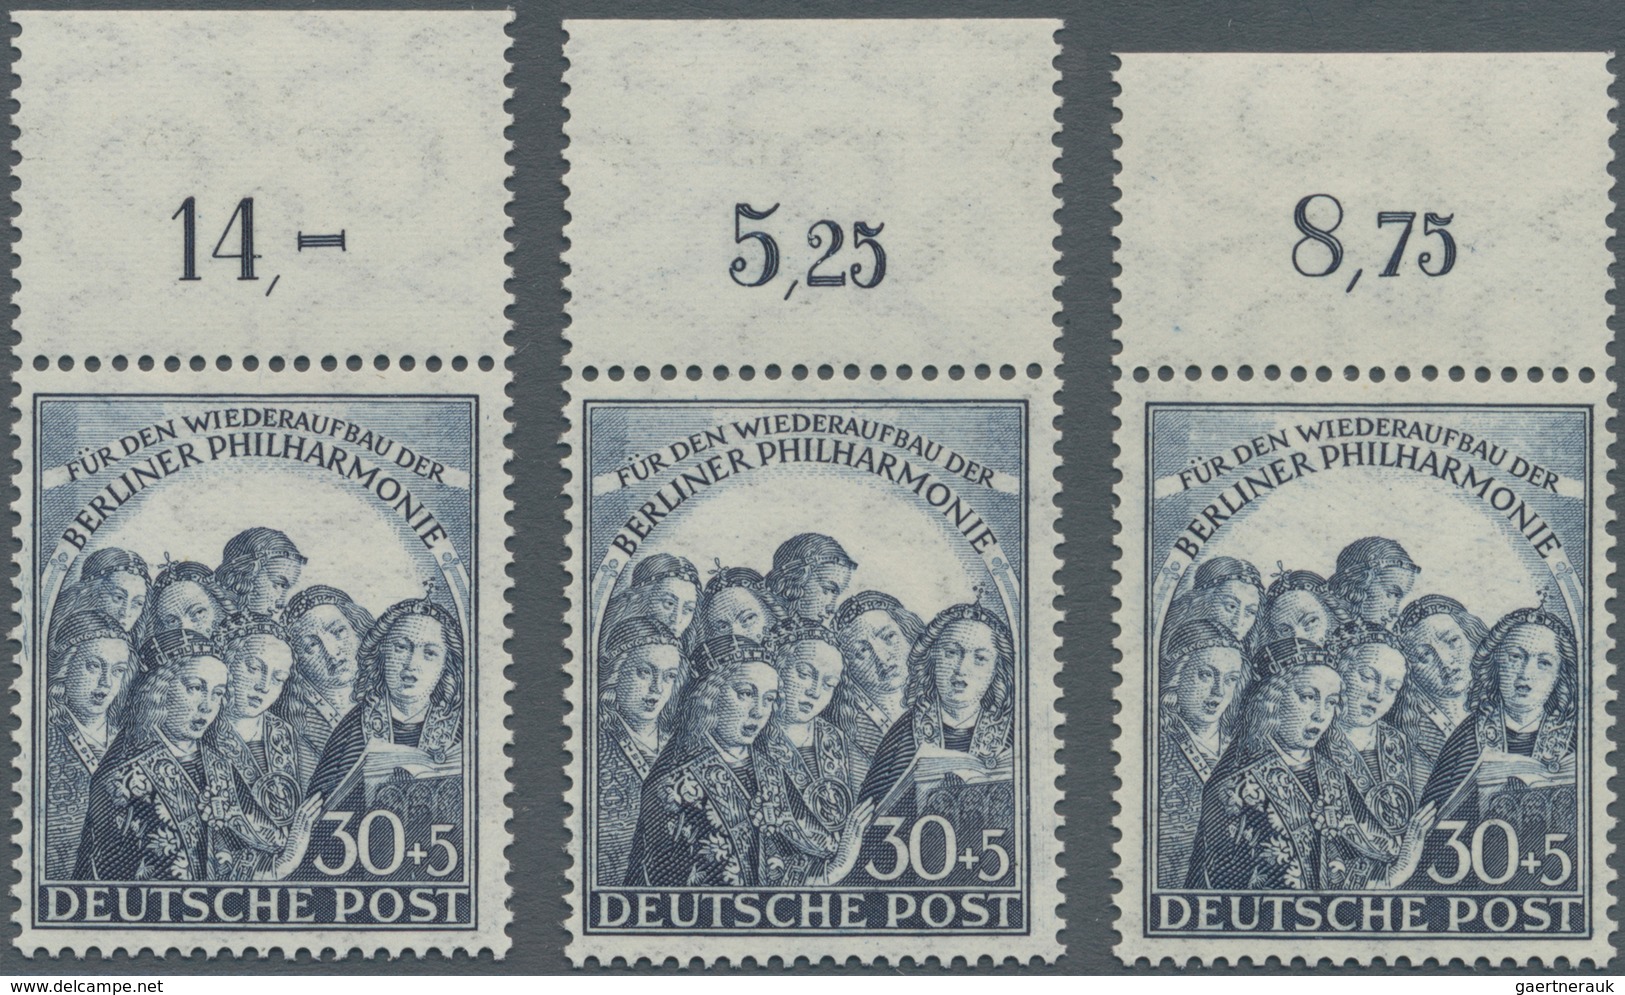 Berlin: 1949/1989, Postfrische Und Gestempelte Partie Auf Steckkarten, Alles Verkaufsfertig Ausgezei - Ungebraucht